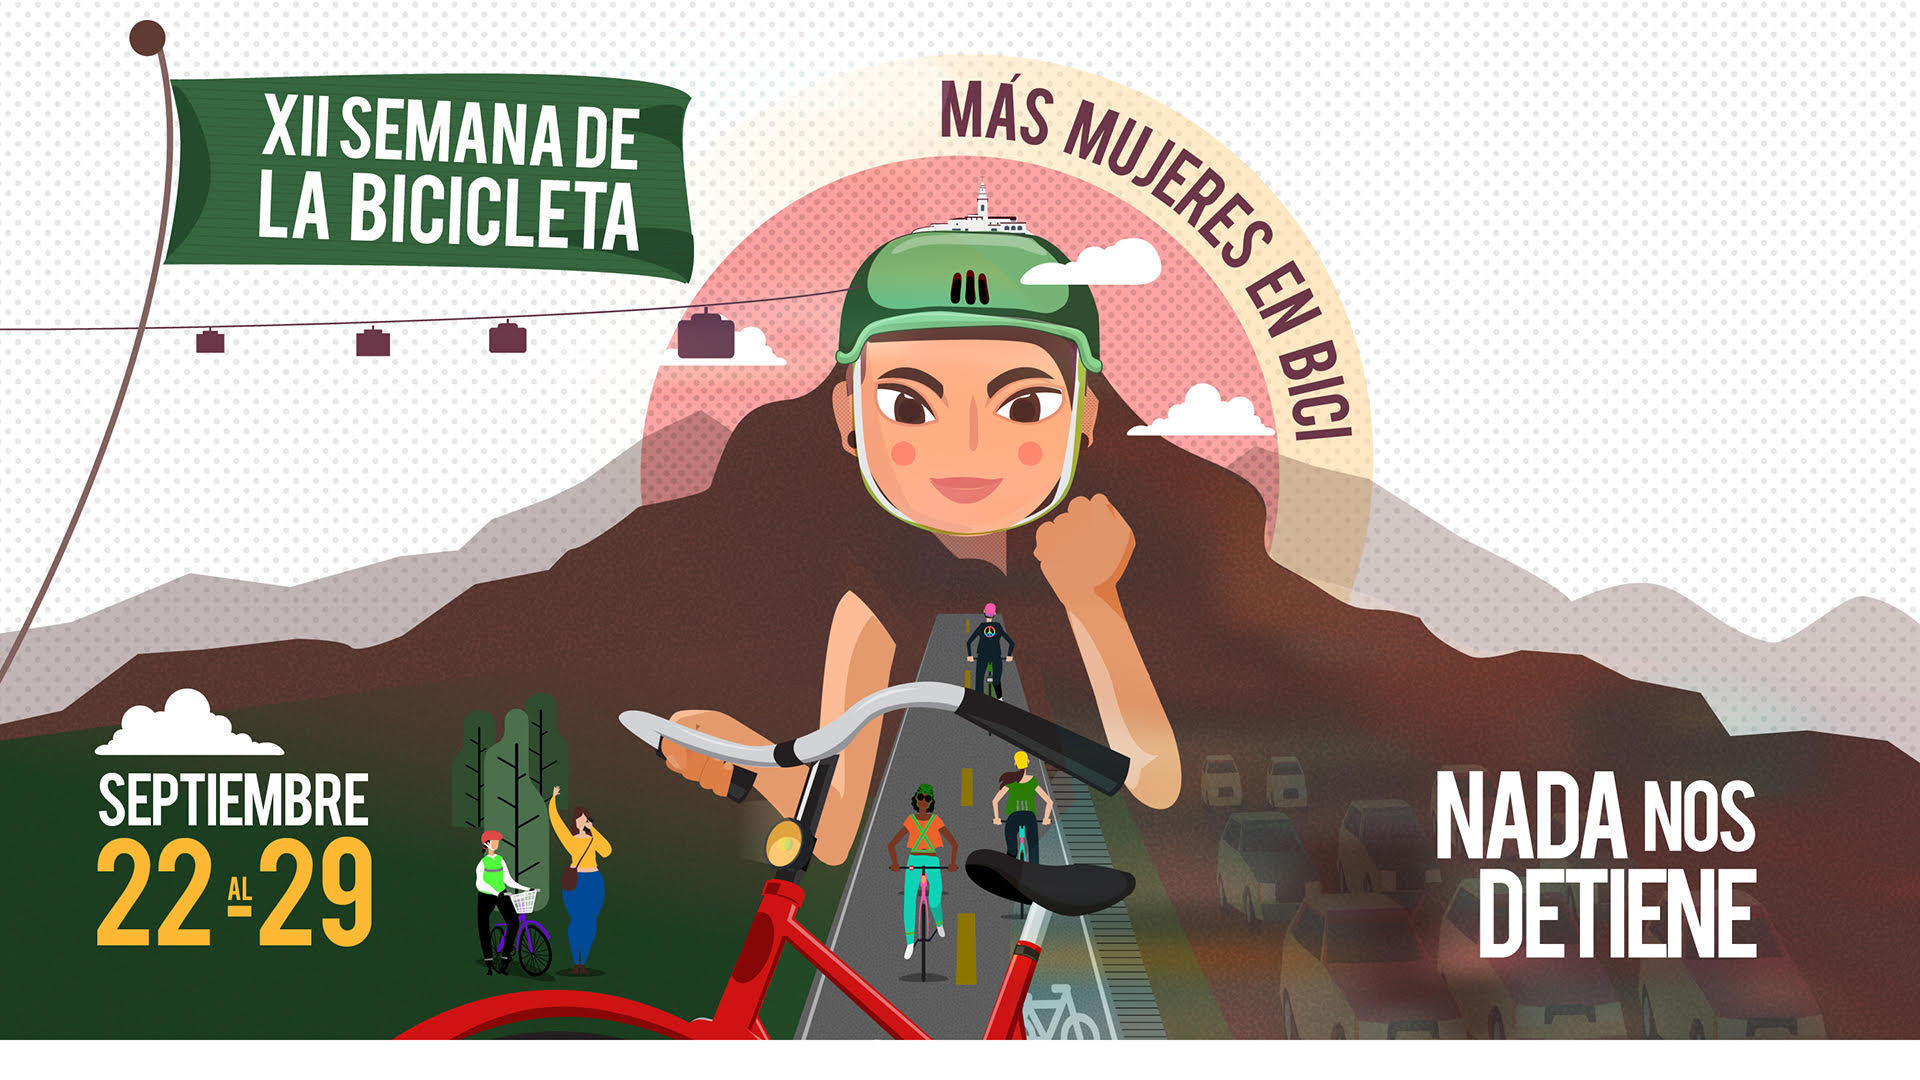 ‘Más mujeres en Bici’, el propósito de la XII Semana de la Bicicleta en Bogotá